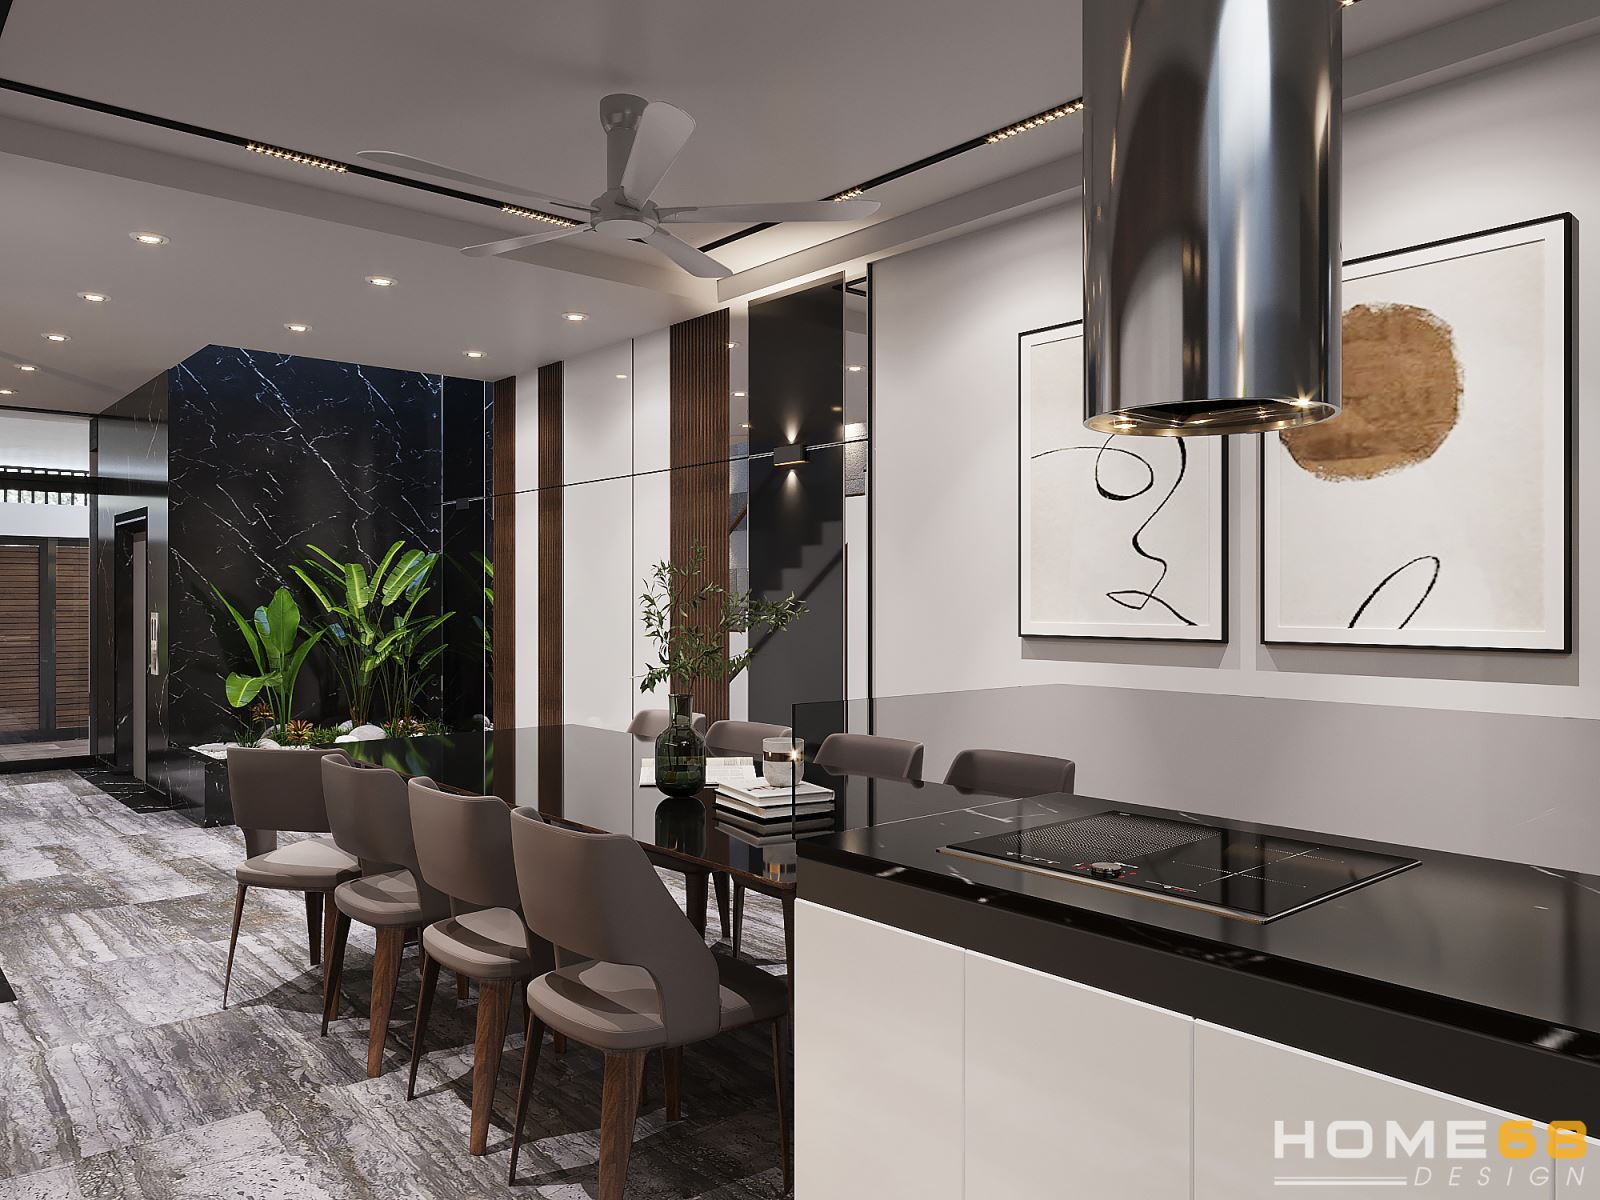 HOME68 thiết kế nội thất phòng ăn hiện đại, đầy đẳng cấp